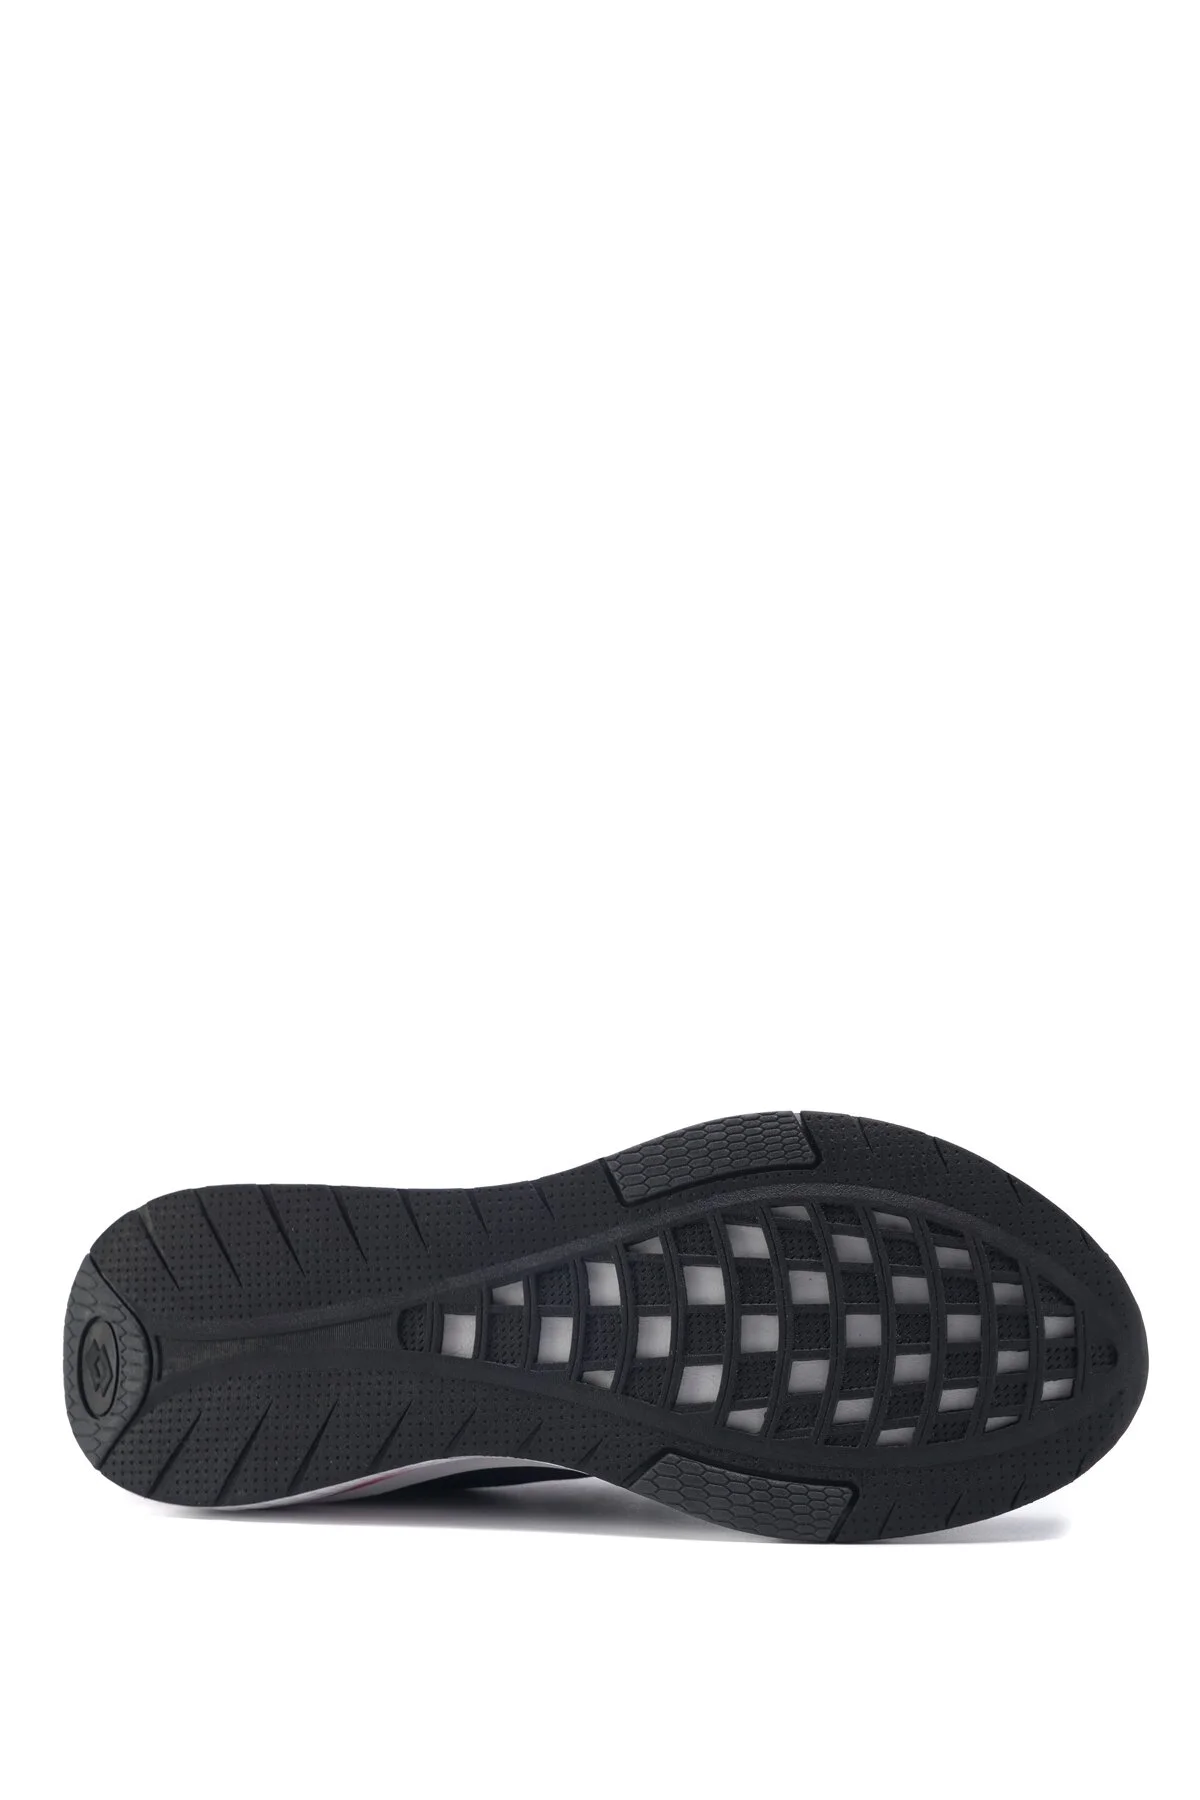 UNION 3FX Erkek Koşu Ayakkabısı-Siyah